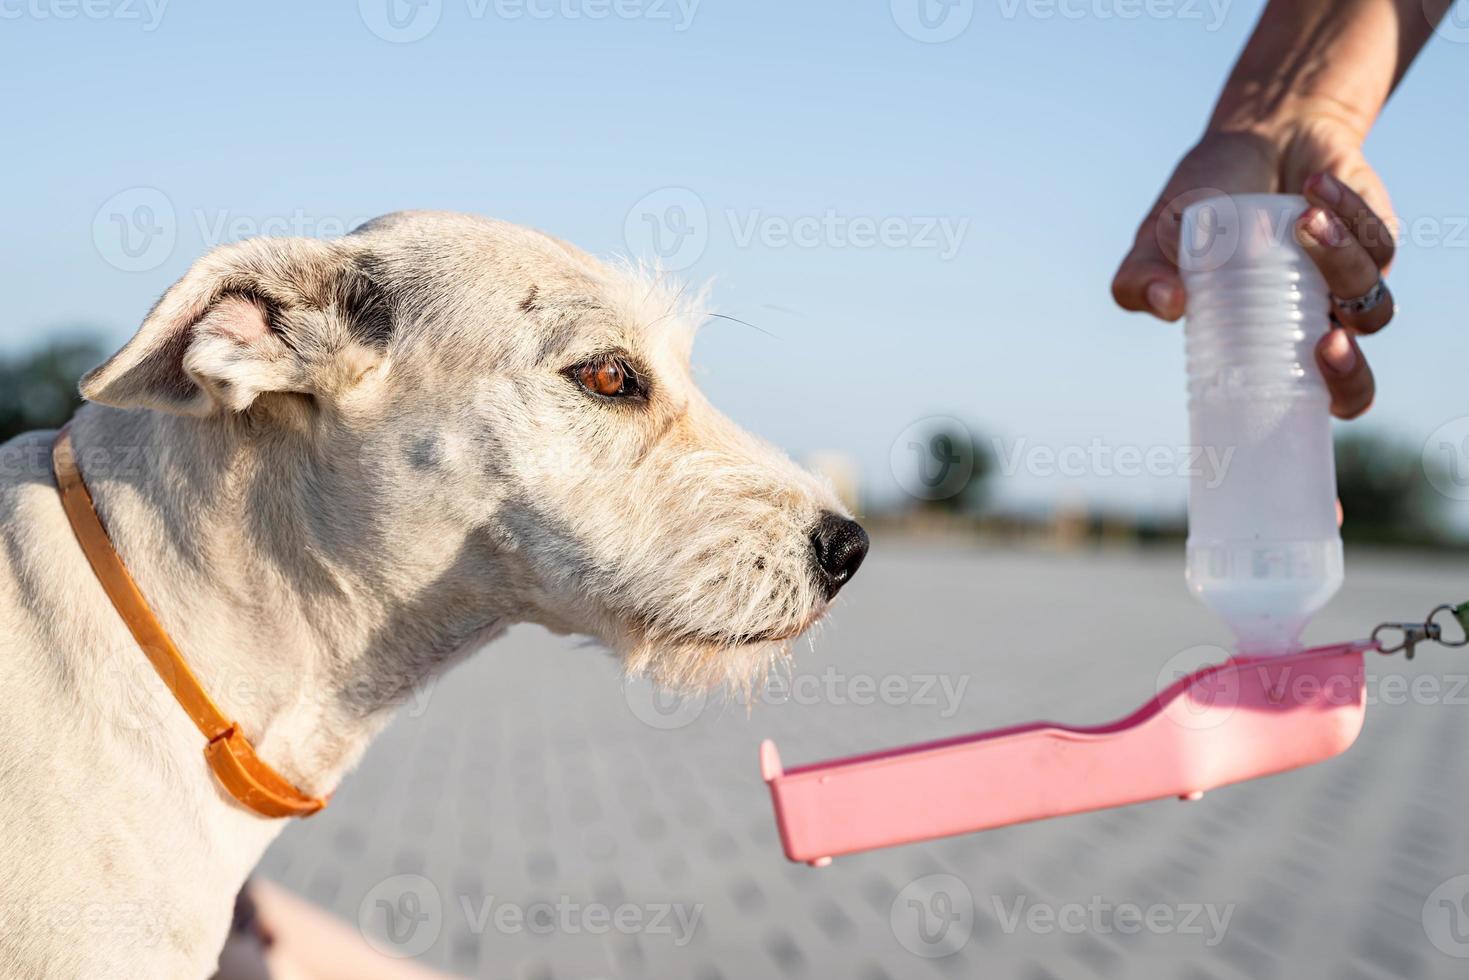 gemengd ras hond drinkwater uit een fles foto